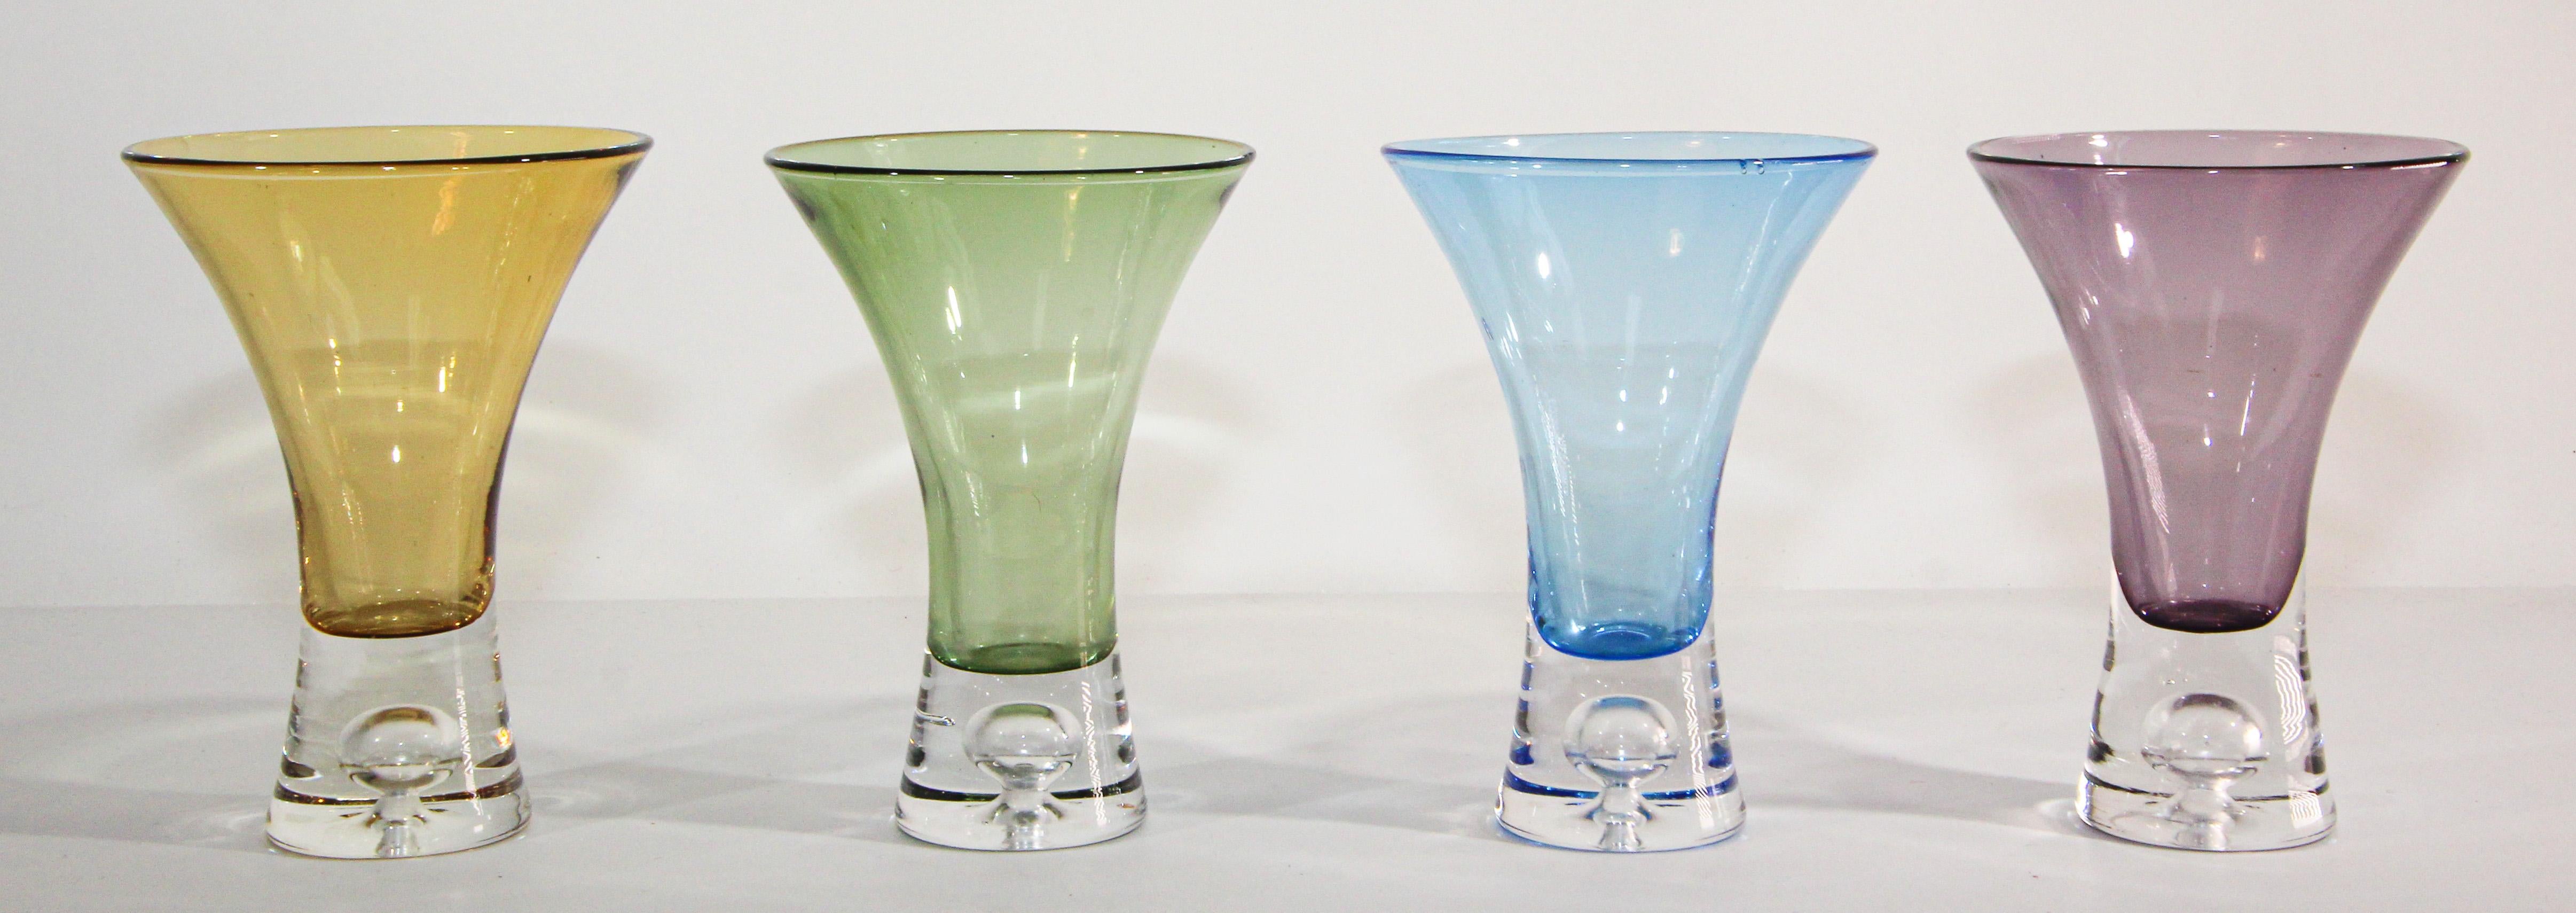 Magnifique ensemble de 4 verres à liqueur à cordial vintage et post-moderne en cristal pour boire une théière.
Cet ensemble de quatre verres se caractérise par un savoir-faire exquis et des couleurs distinctives. Chaque pièce est de couleur